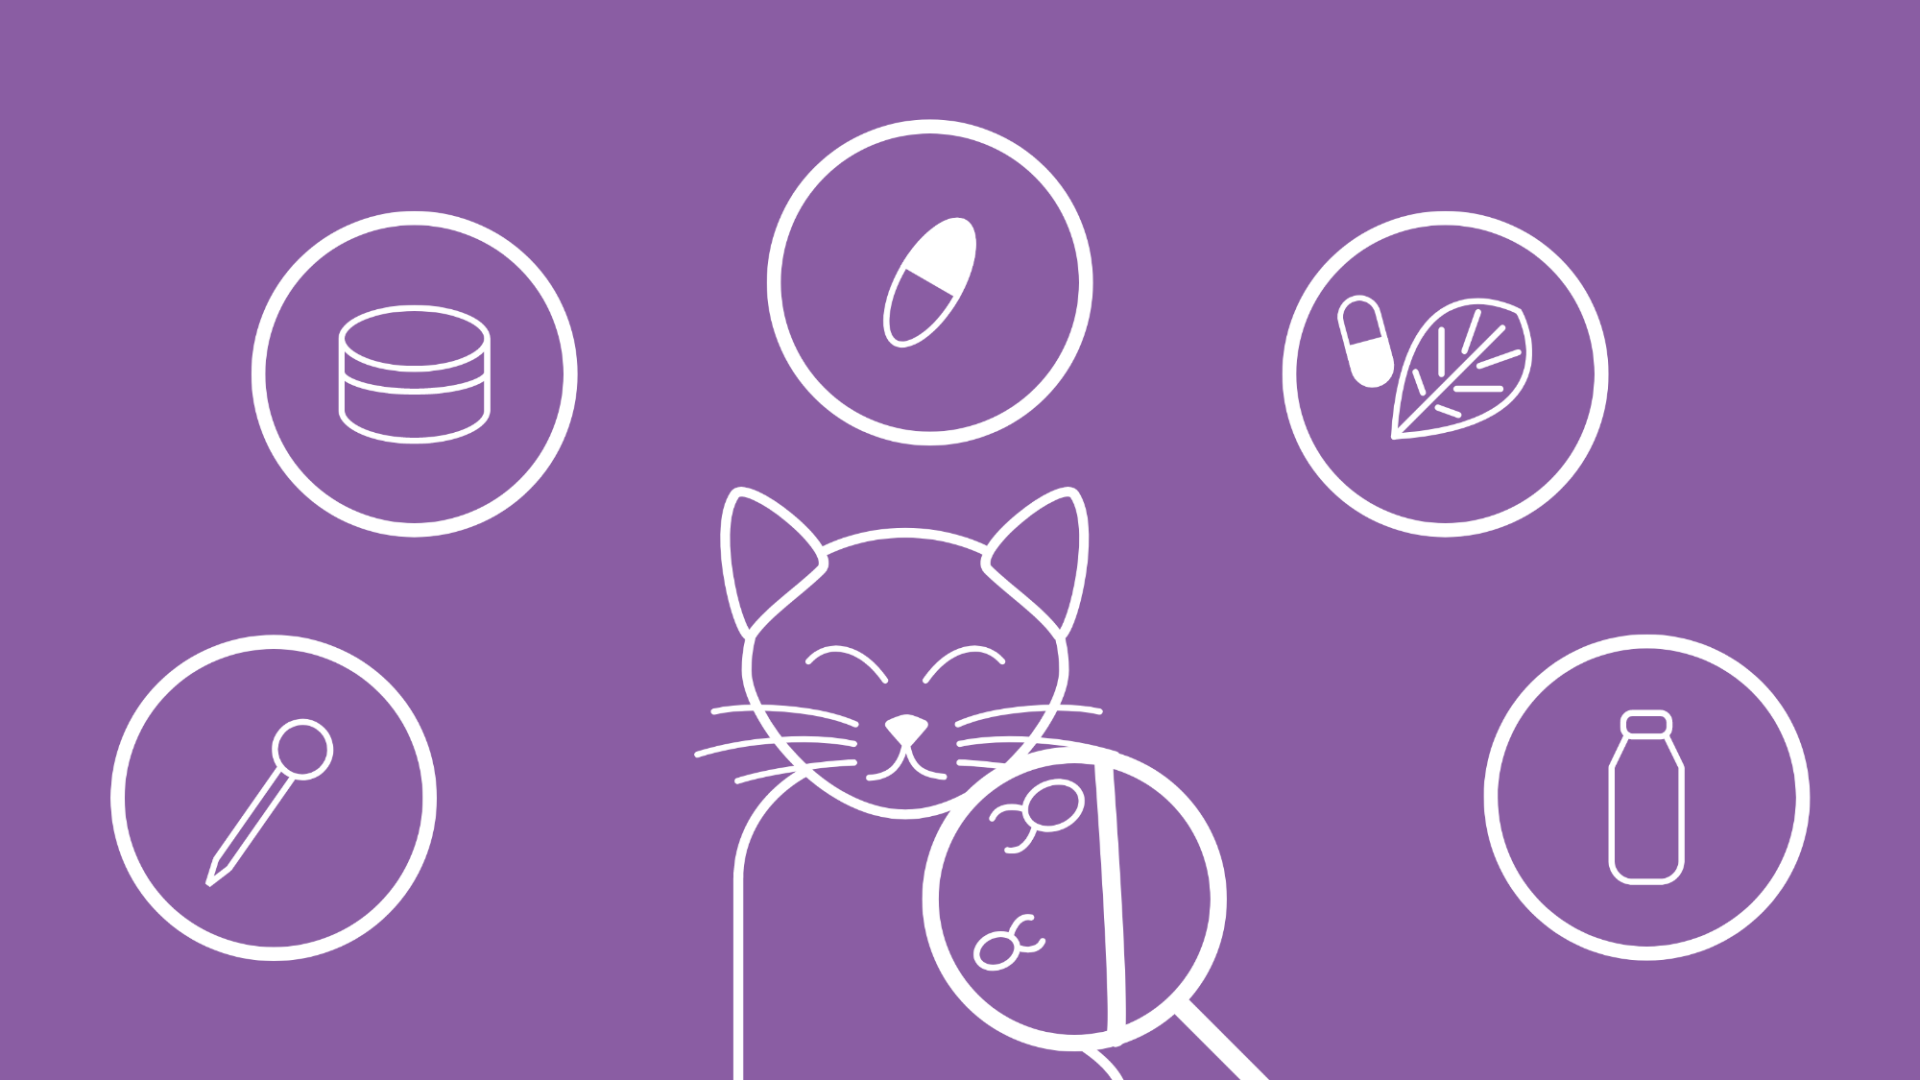 Um eine Katze, auf deren Fell eine Lupe gehalten wird, um die Katzenflöhe sichtbar zu machen, sind im Icon-Stil die verschiedenen Behandlungsmöglichkeiten illustriert.